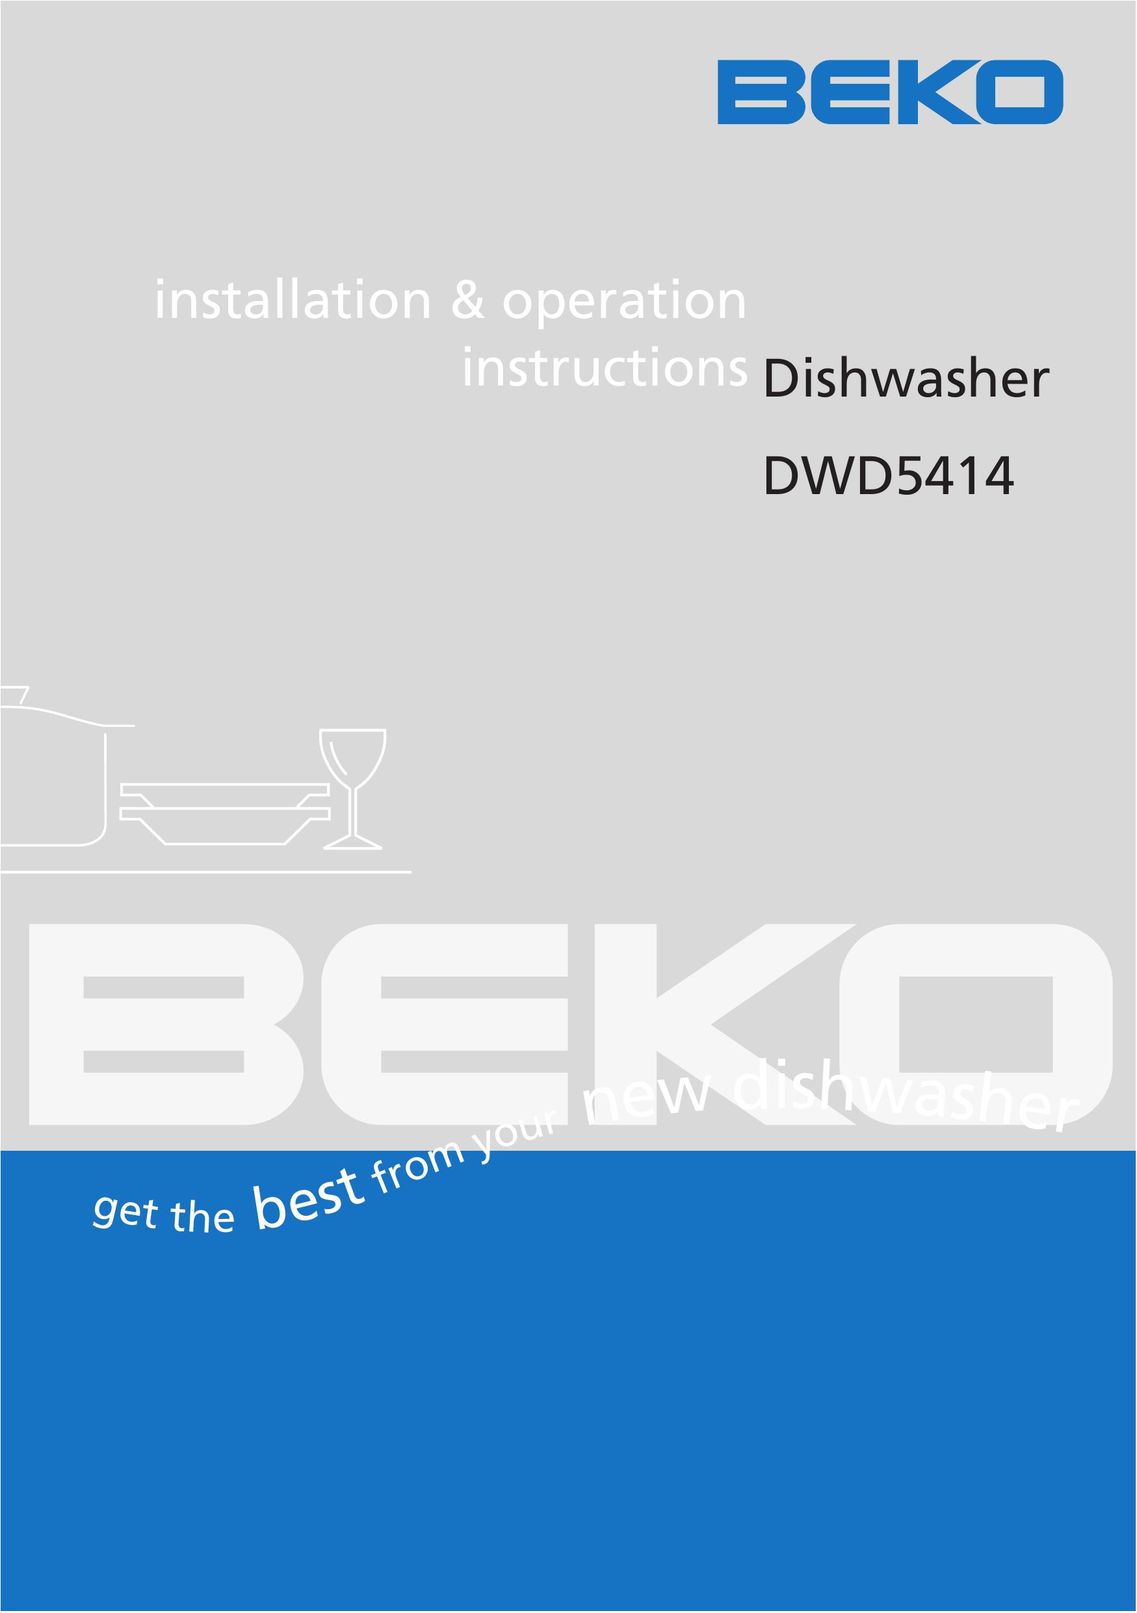 Beko DWD5414 Dishwasher User Manual